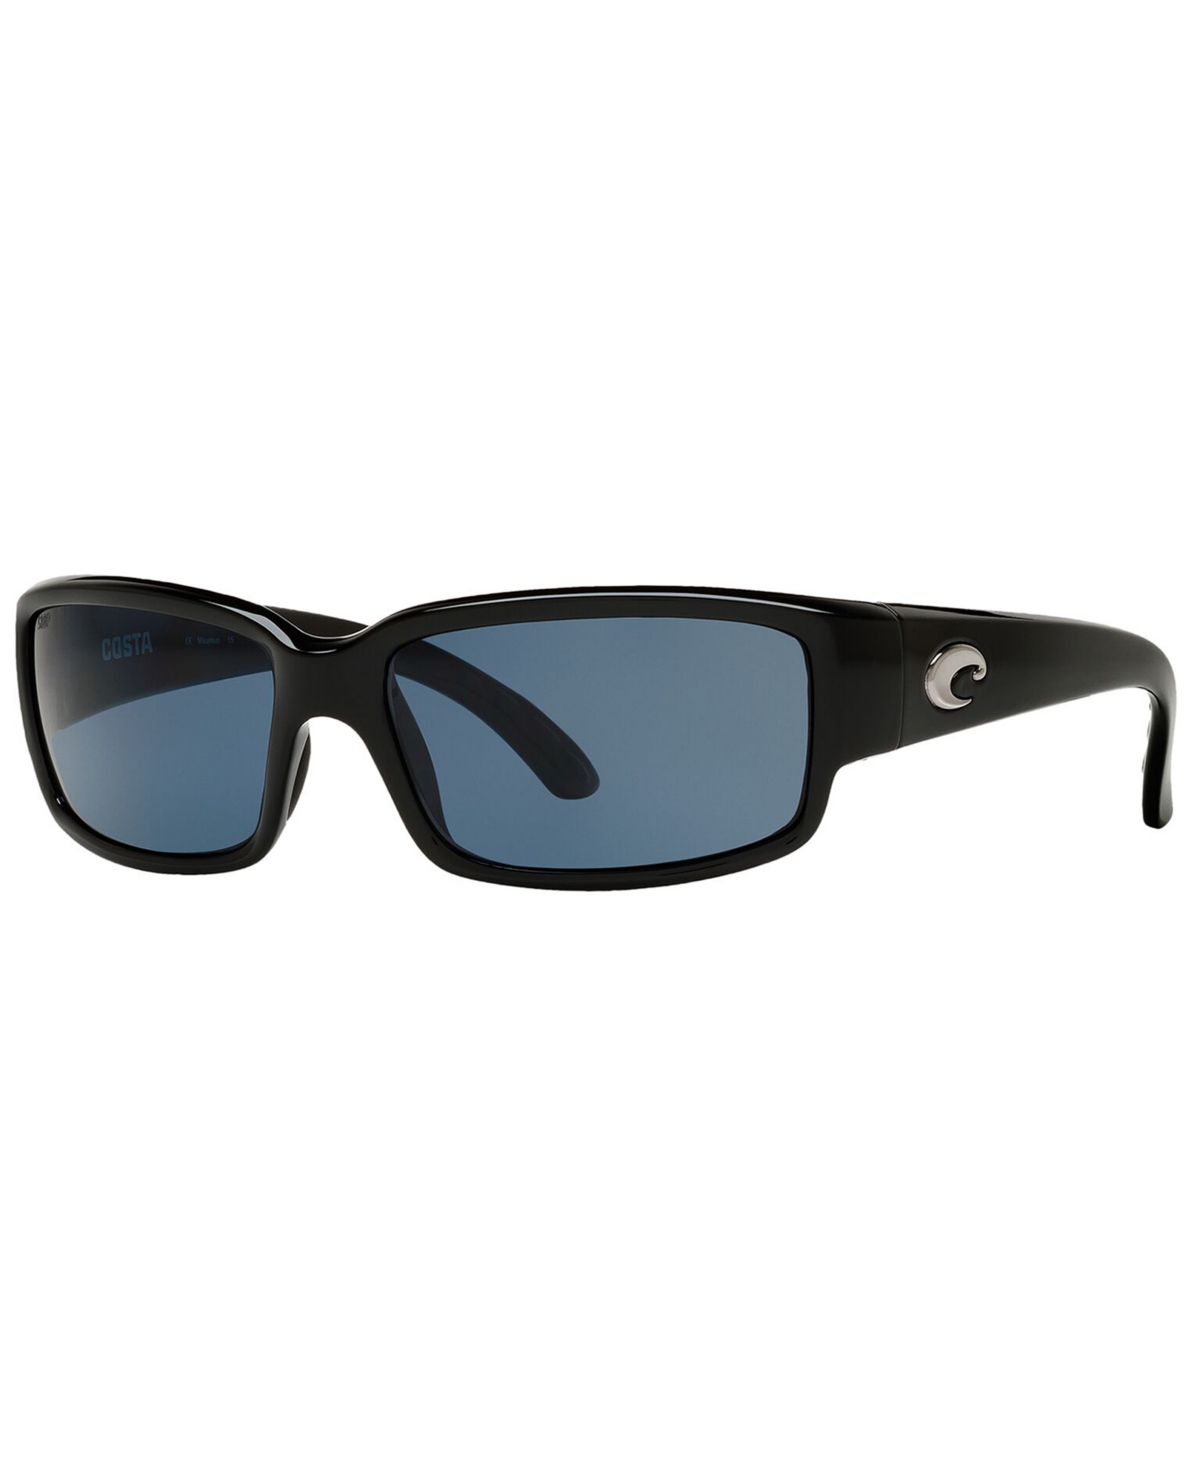 Unisex Polarized Sunglasses - BLACK SHINY/GREY